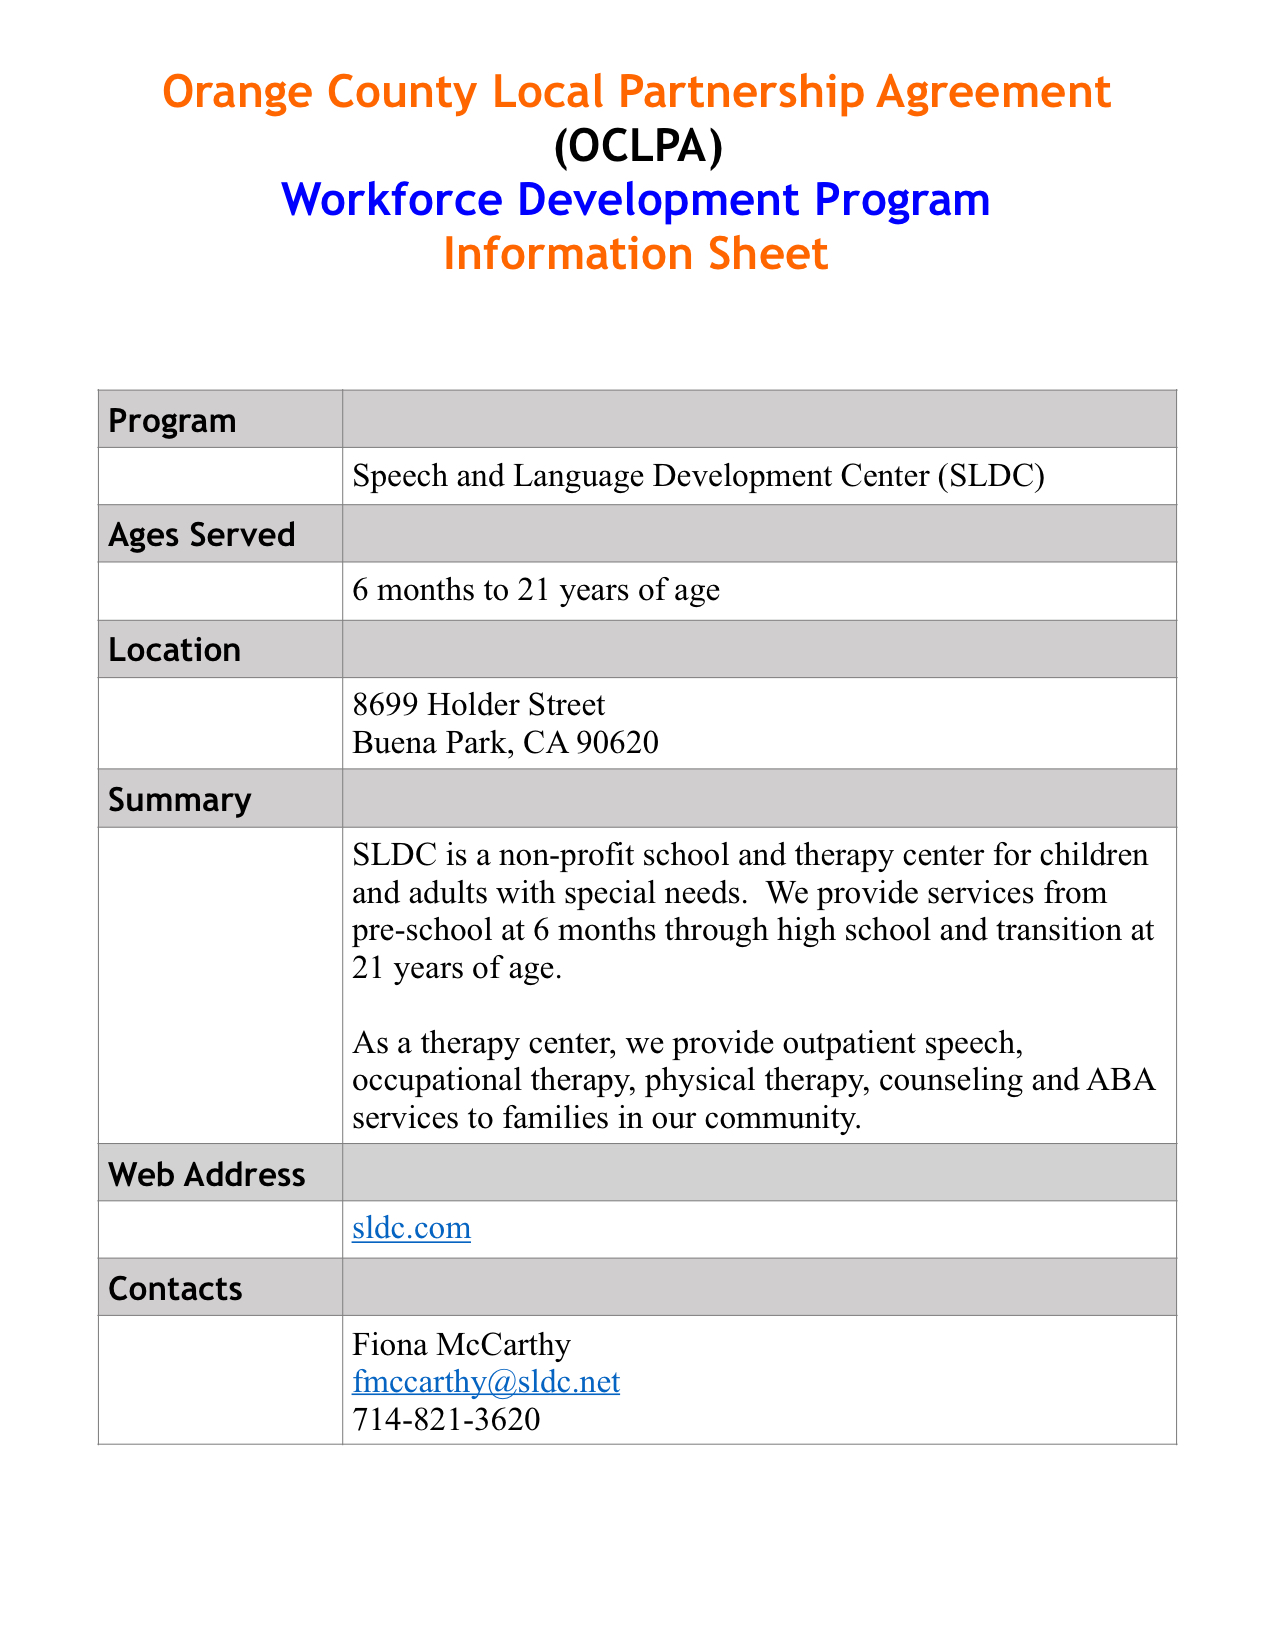 Speech Language Development Center Information Sheet Chapman